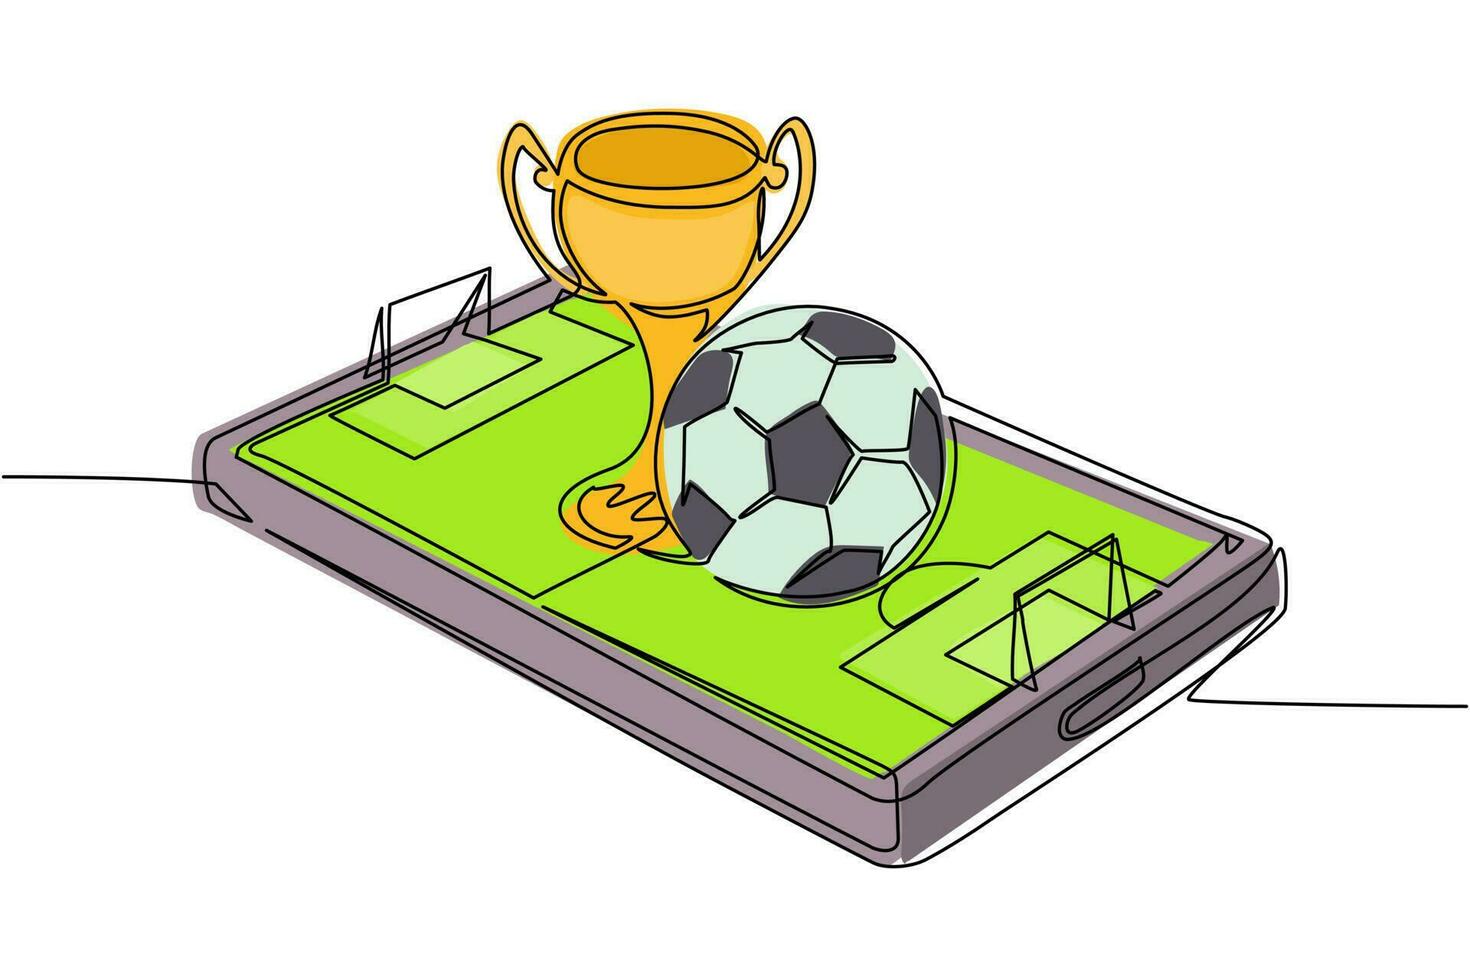 una sola línea continua dibujando una pelota de fútbol y una copa de trofeo sobre la pantalla del teléfono inteligente del campo de fútbol virtual. fútbol de fútbol móvil. juego de fútbol en línea con aplicación móvil en vivo. vector de diseño de dibujo de una línea